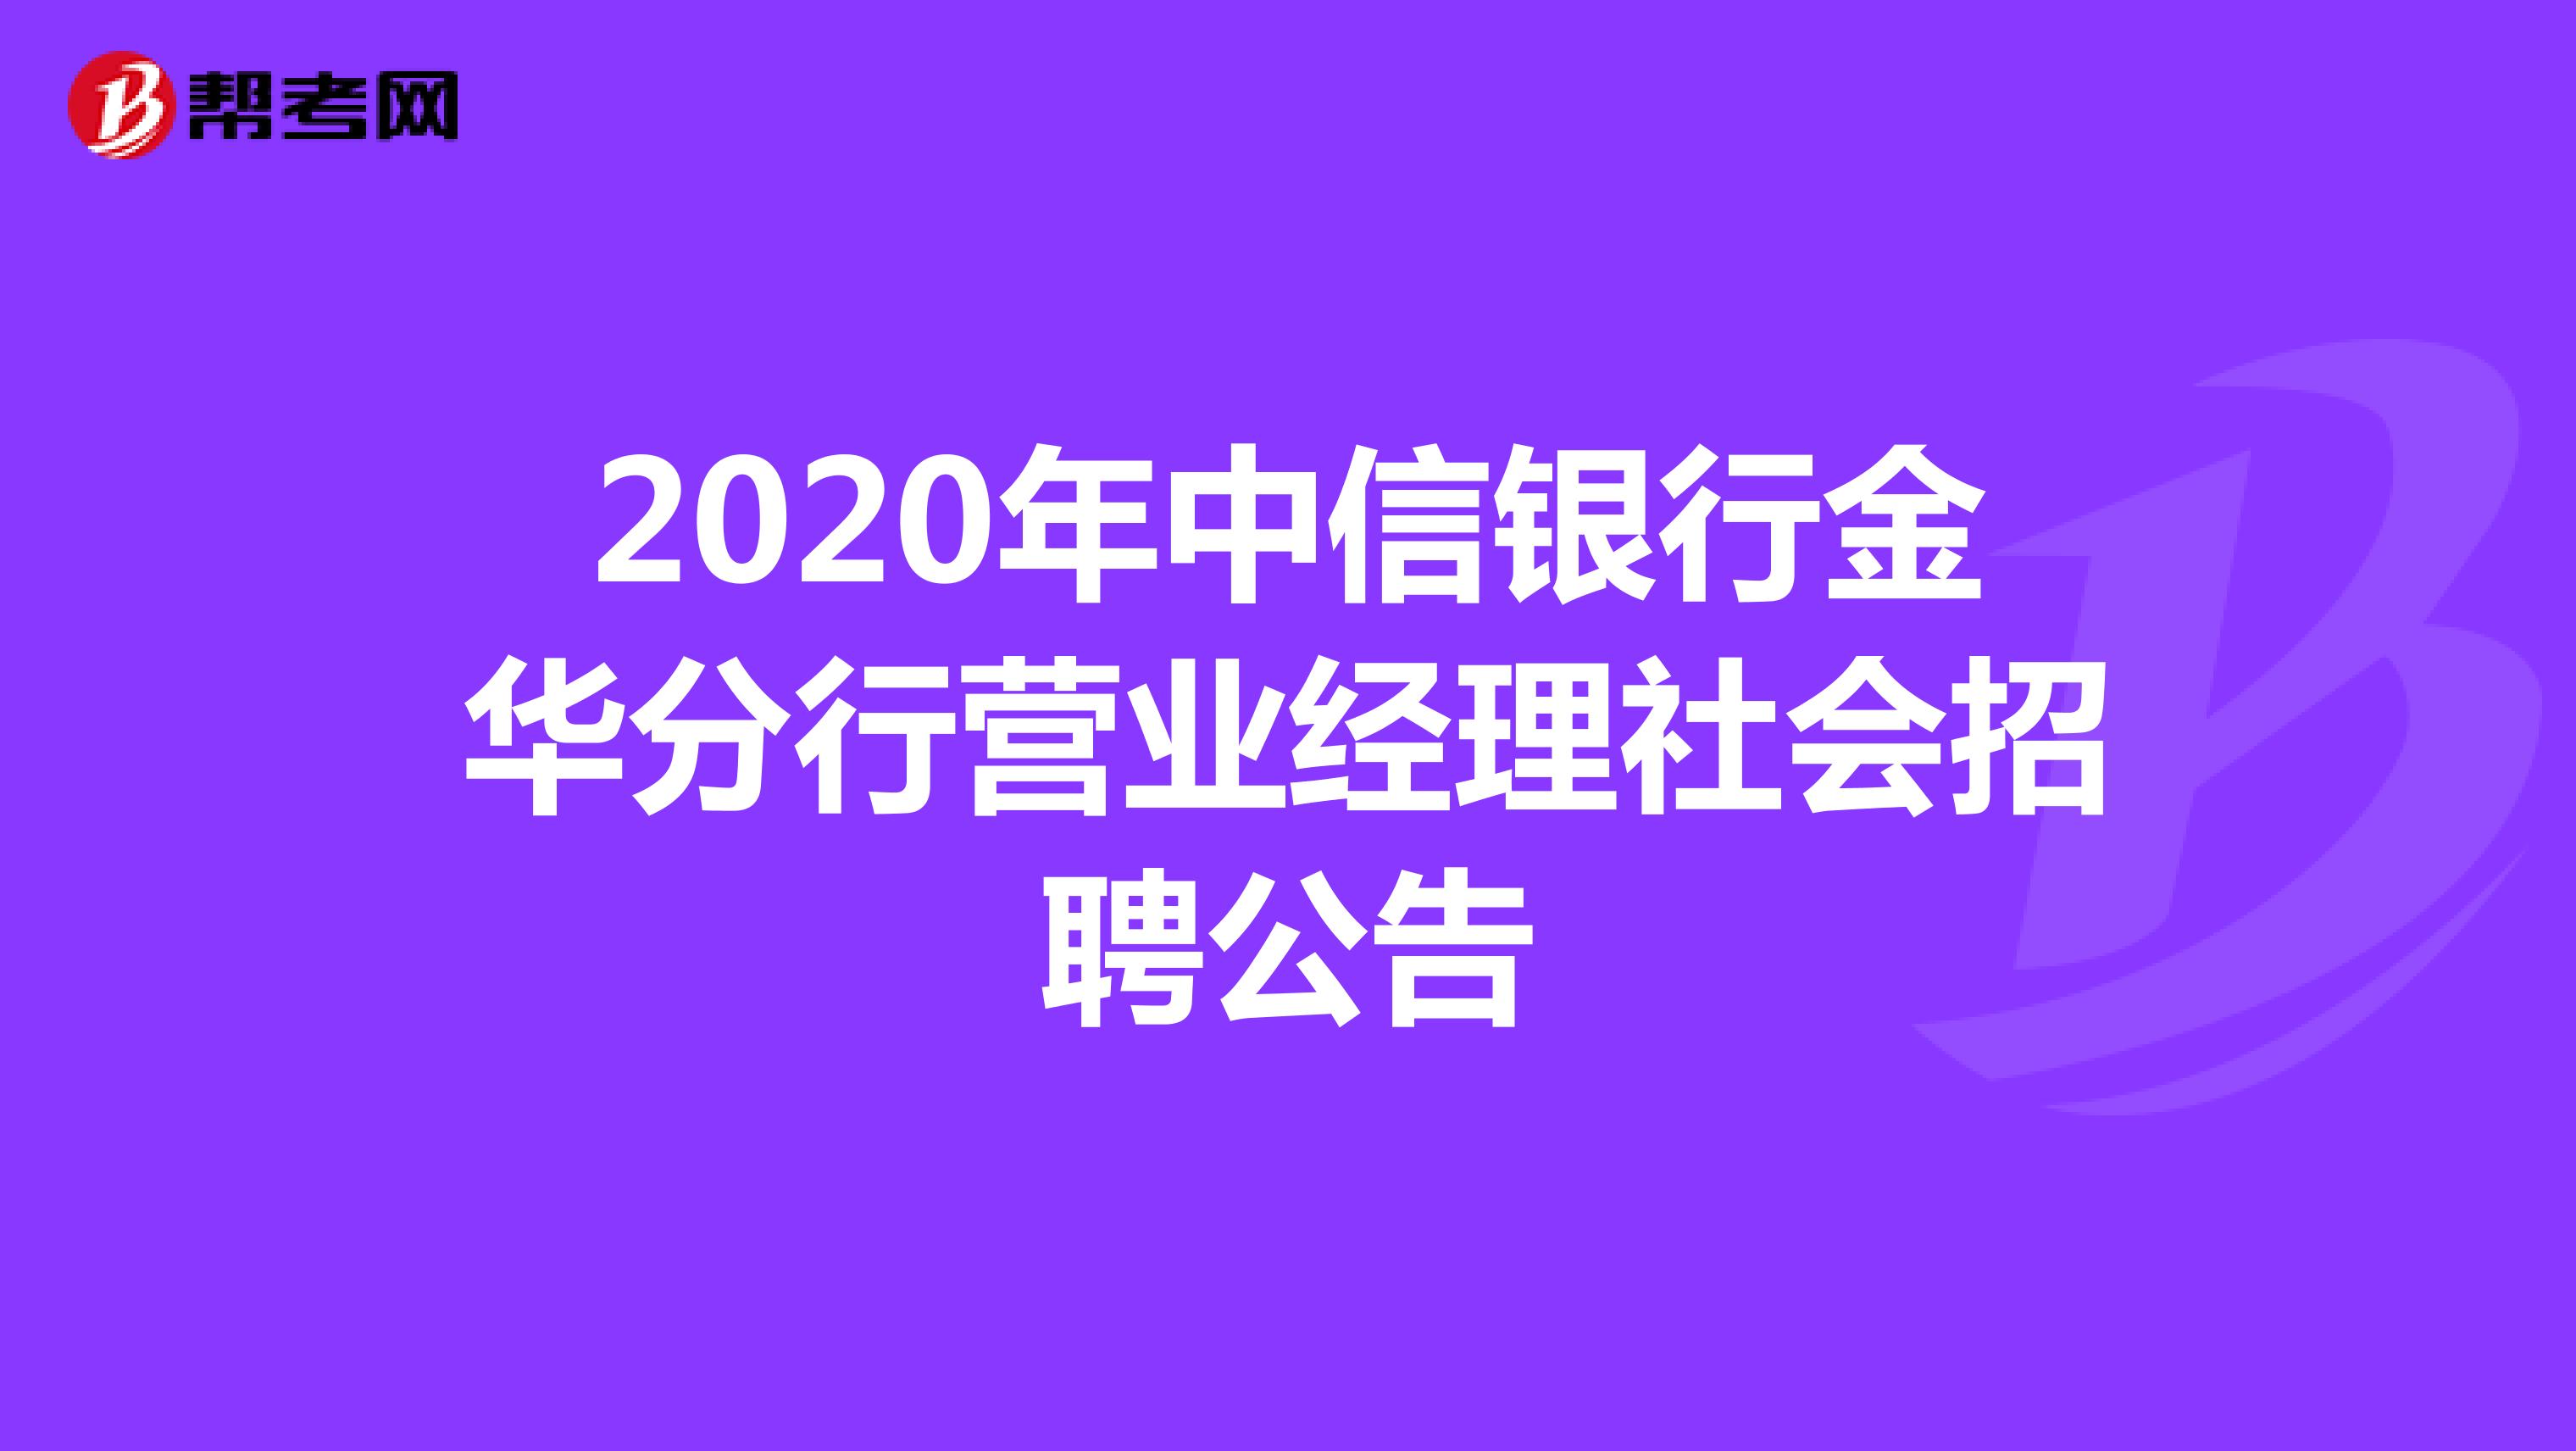 2020年中信银行金华分行营业经理社会招聘公告